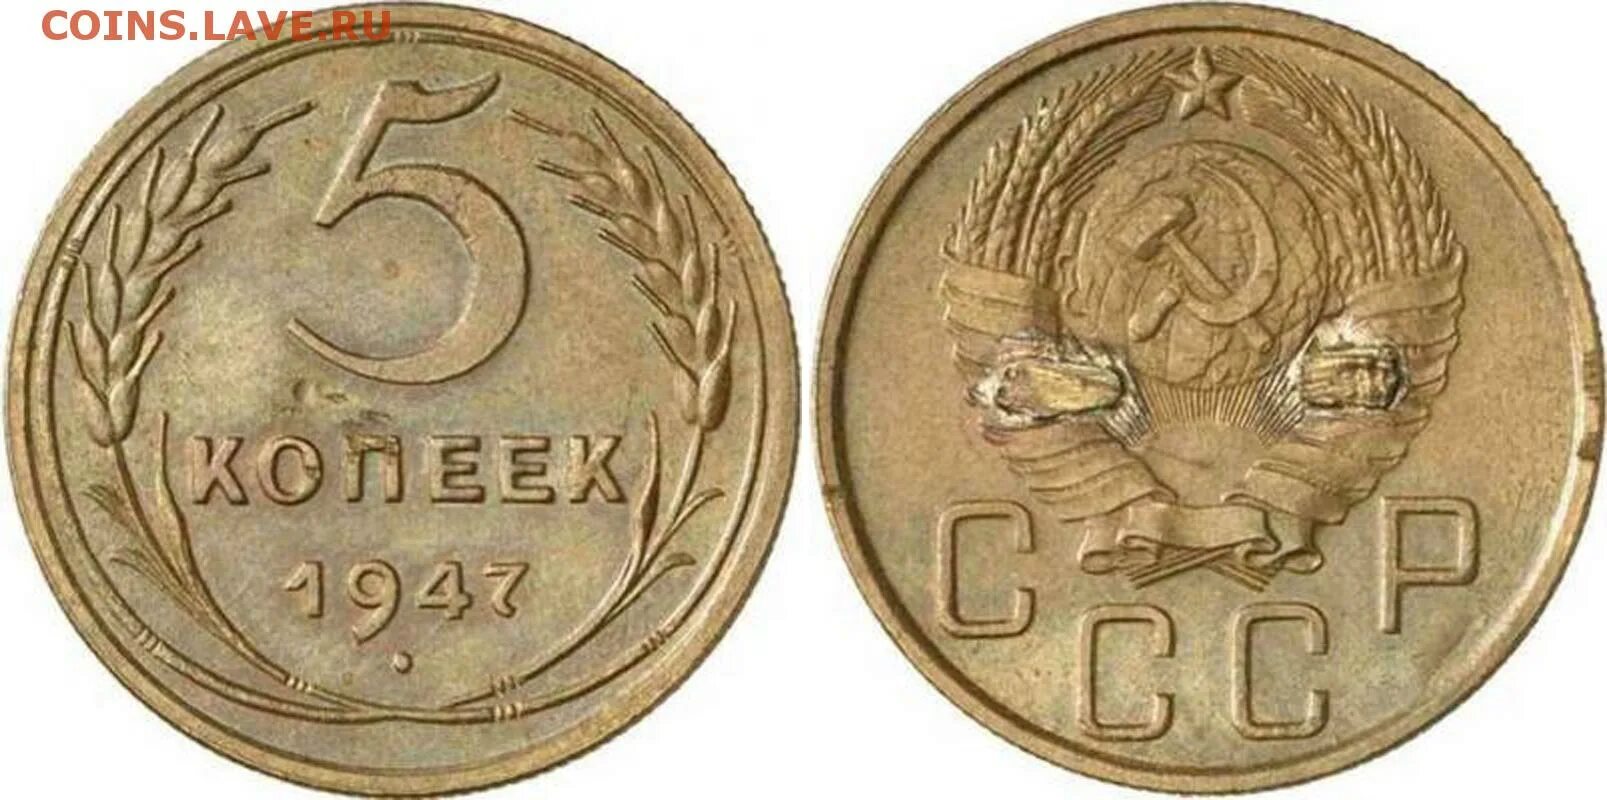 80 т в рублях. Пробные монеты СССР. Монеты 1947 года. Пробные монеты СССР 1926 года. Пробные 5 копеек 1924.